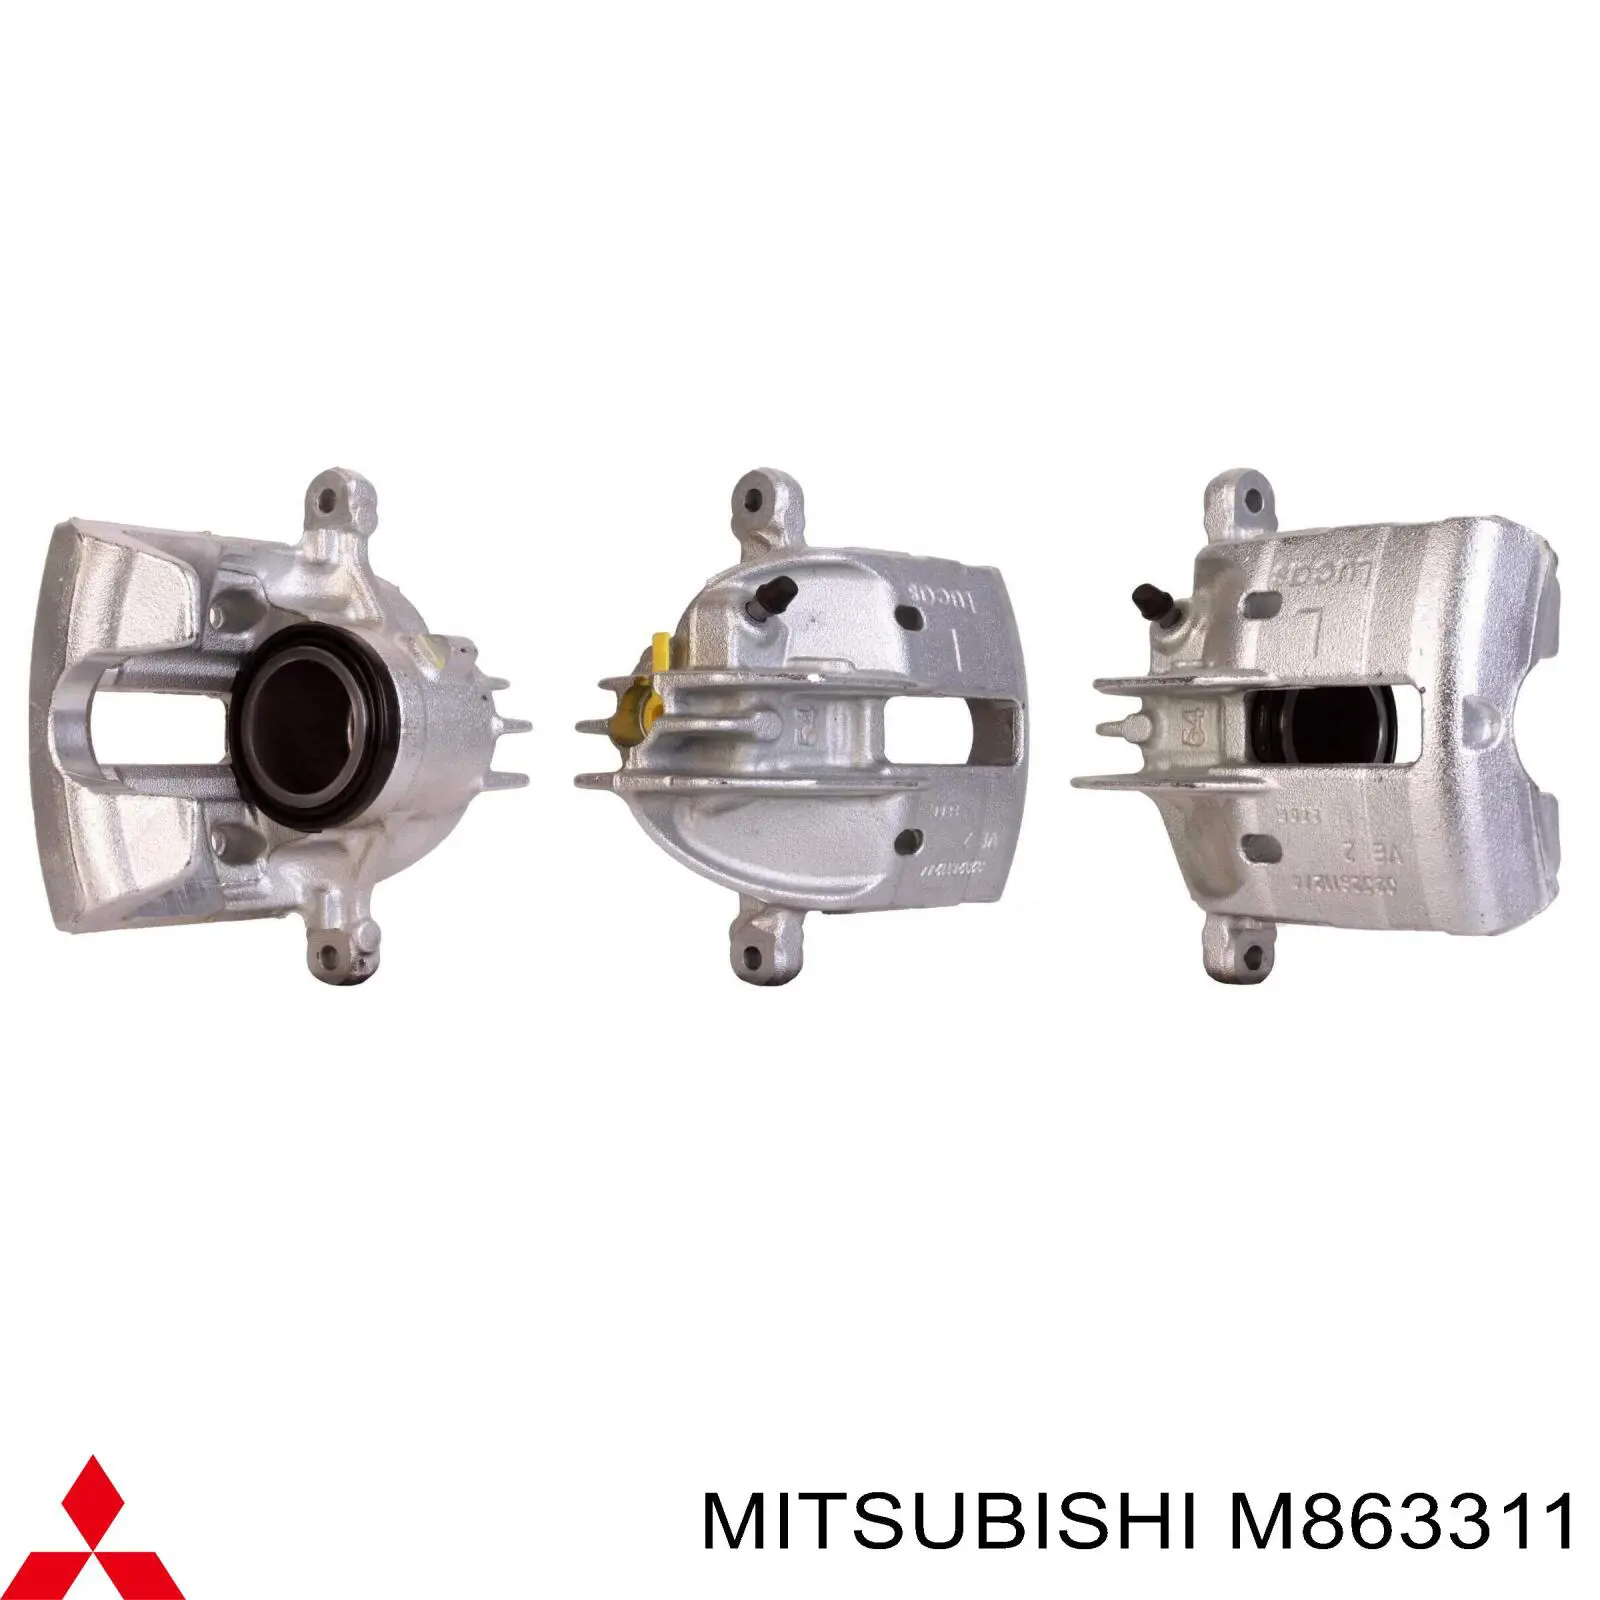 M863311 Mitsubishi suporte do freio dianteiro esquerdo